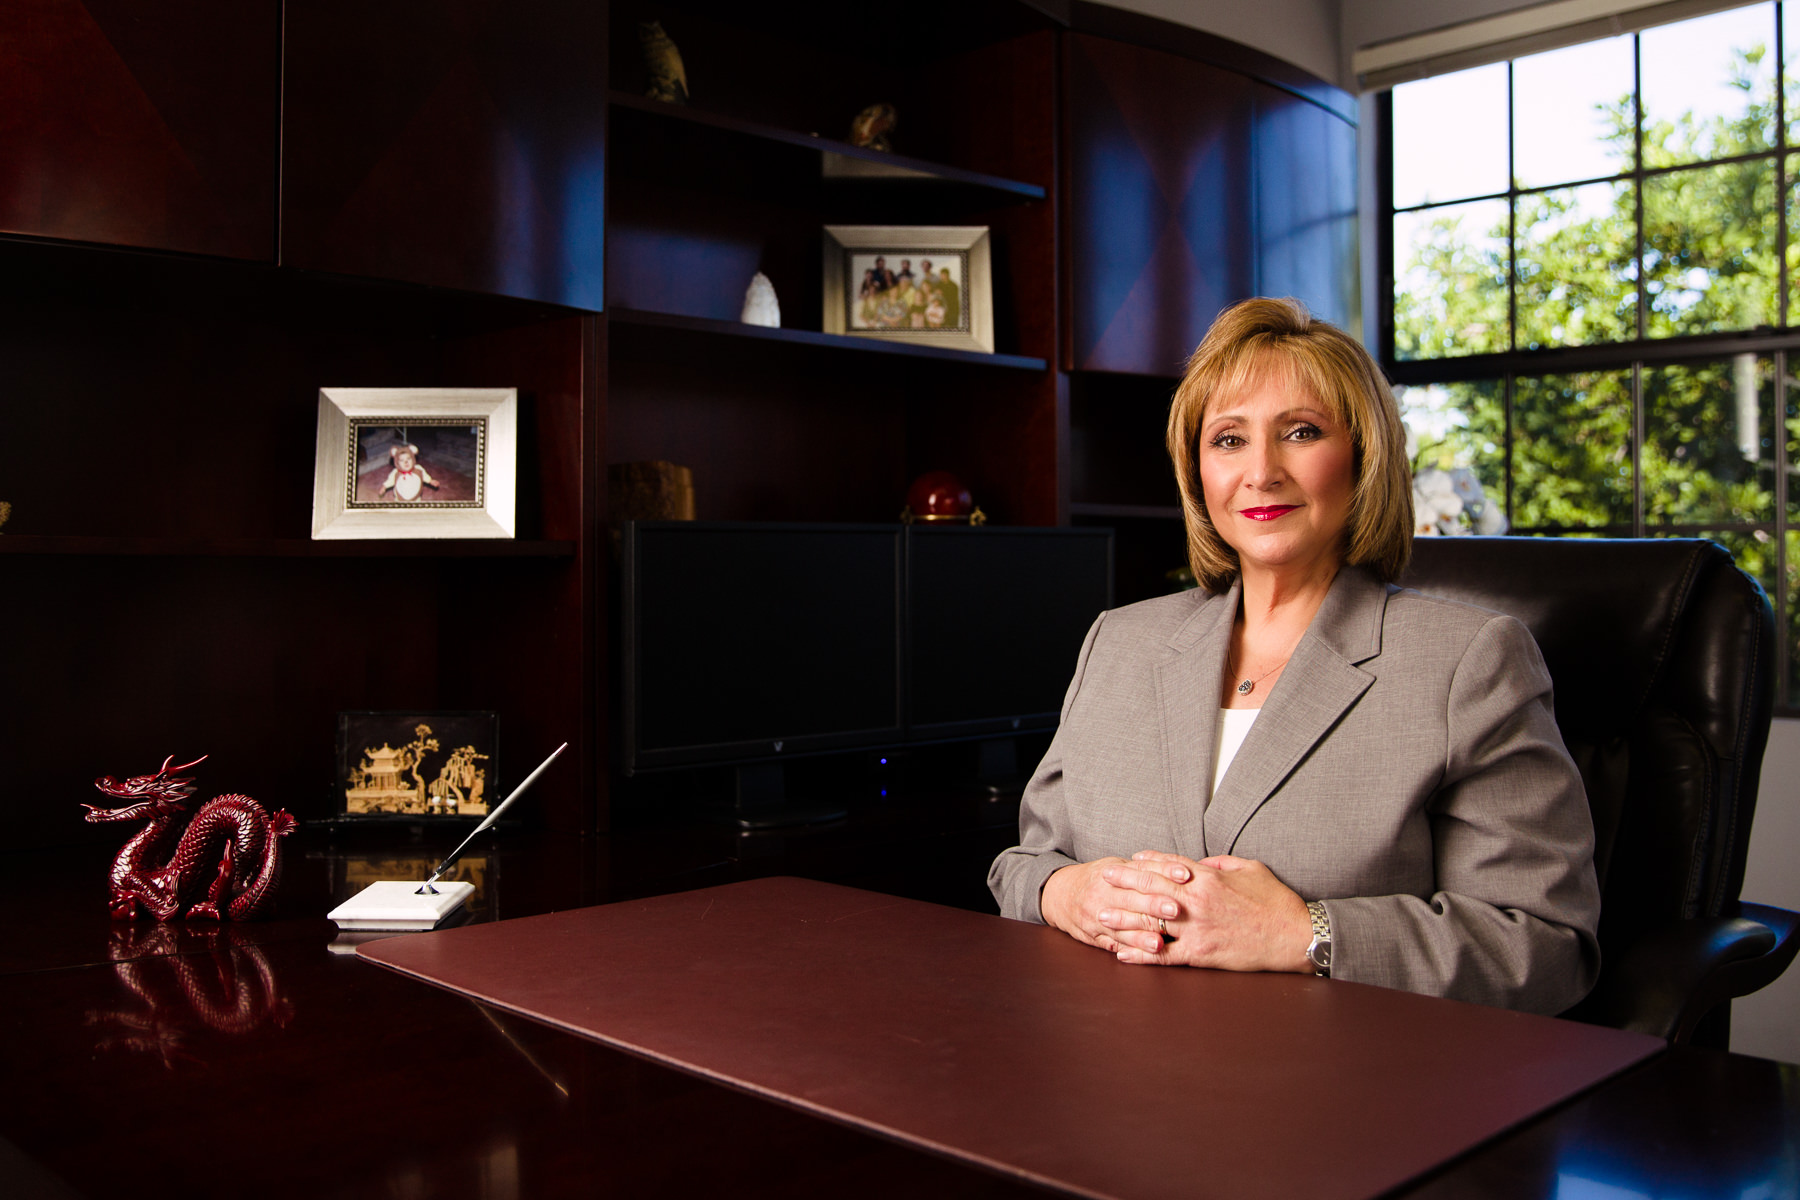 Attorney Diane Mancinelli at her desk